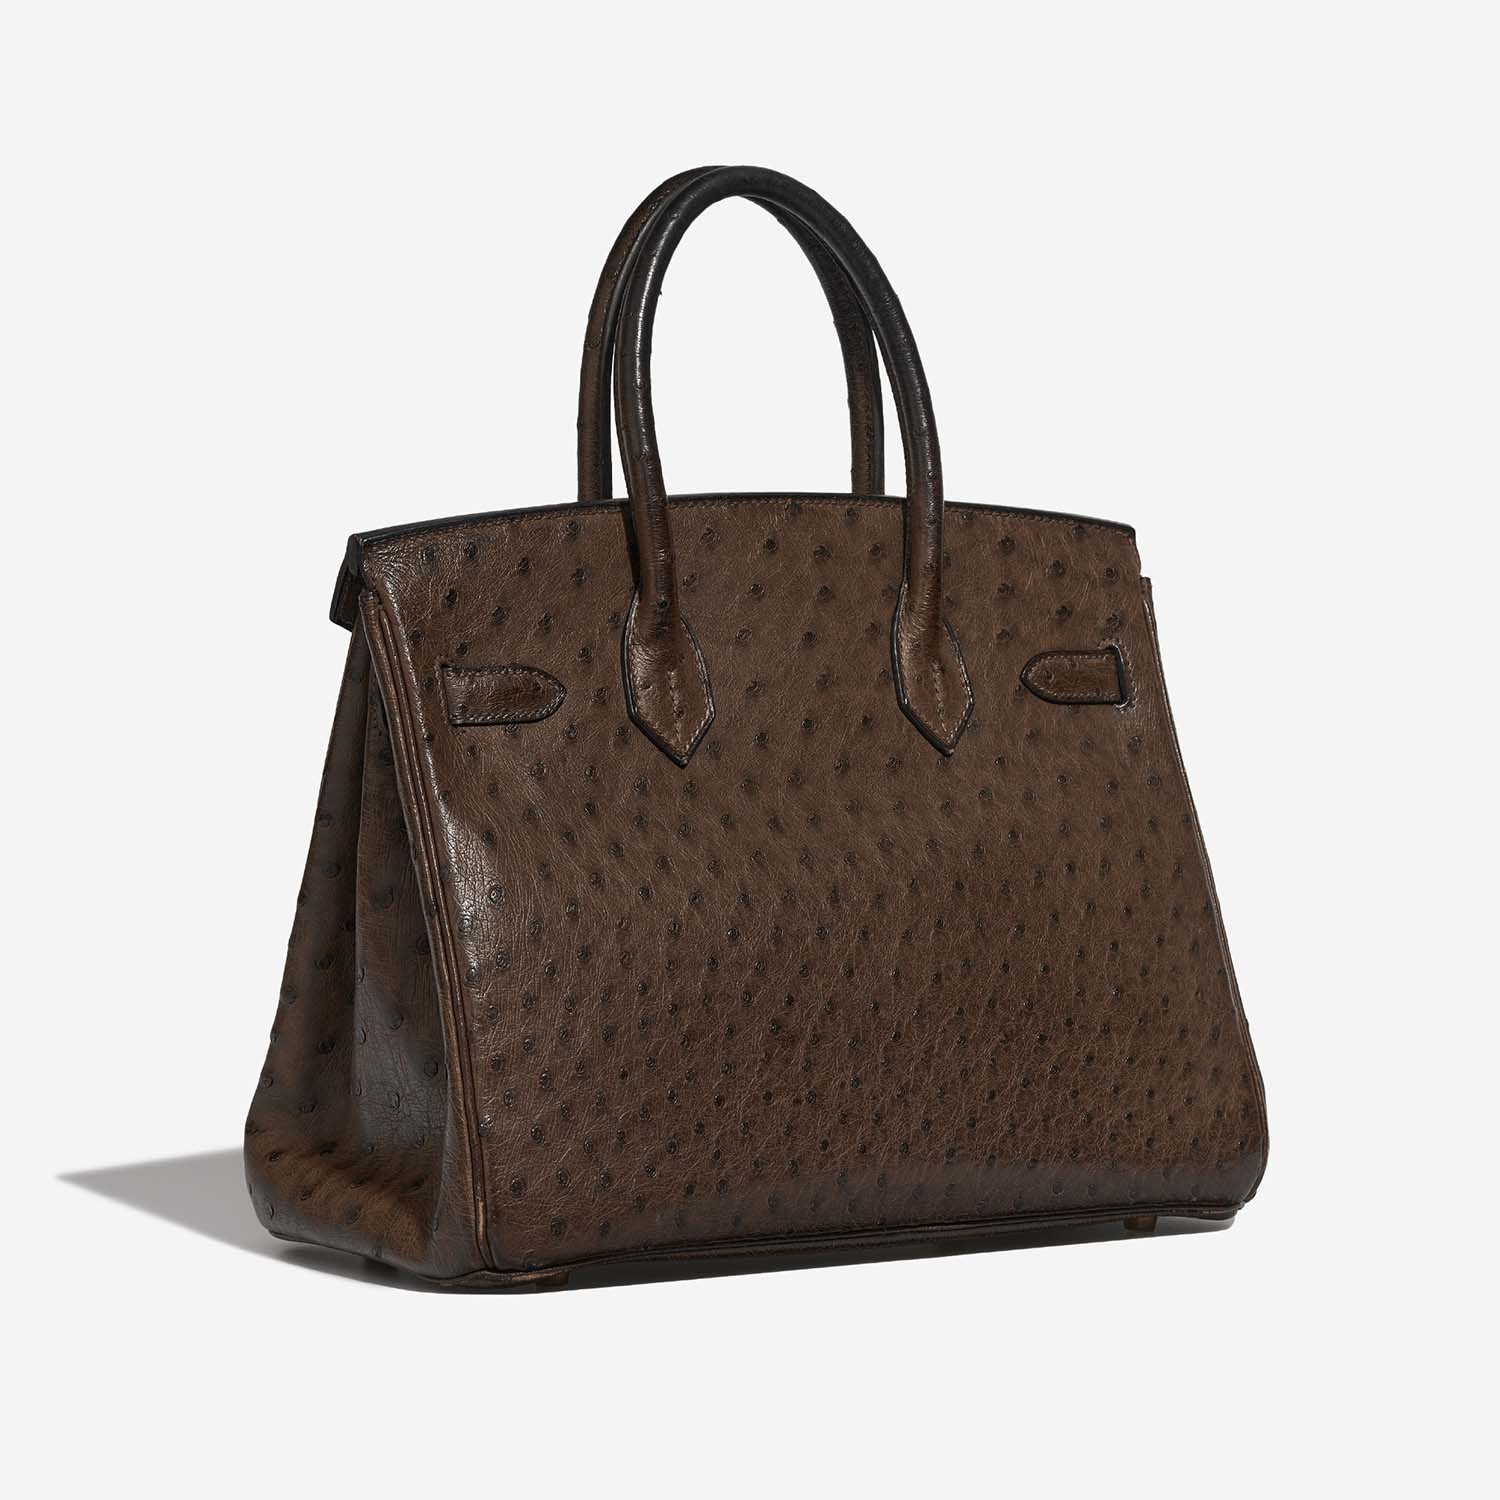 Hermès Birkin 30 Marron 7SB S | Verkaufen Sie Ihre Designertasche auf Saclab.com